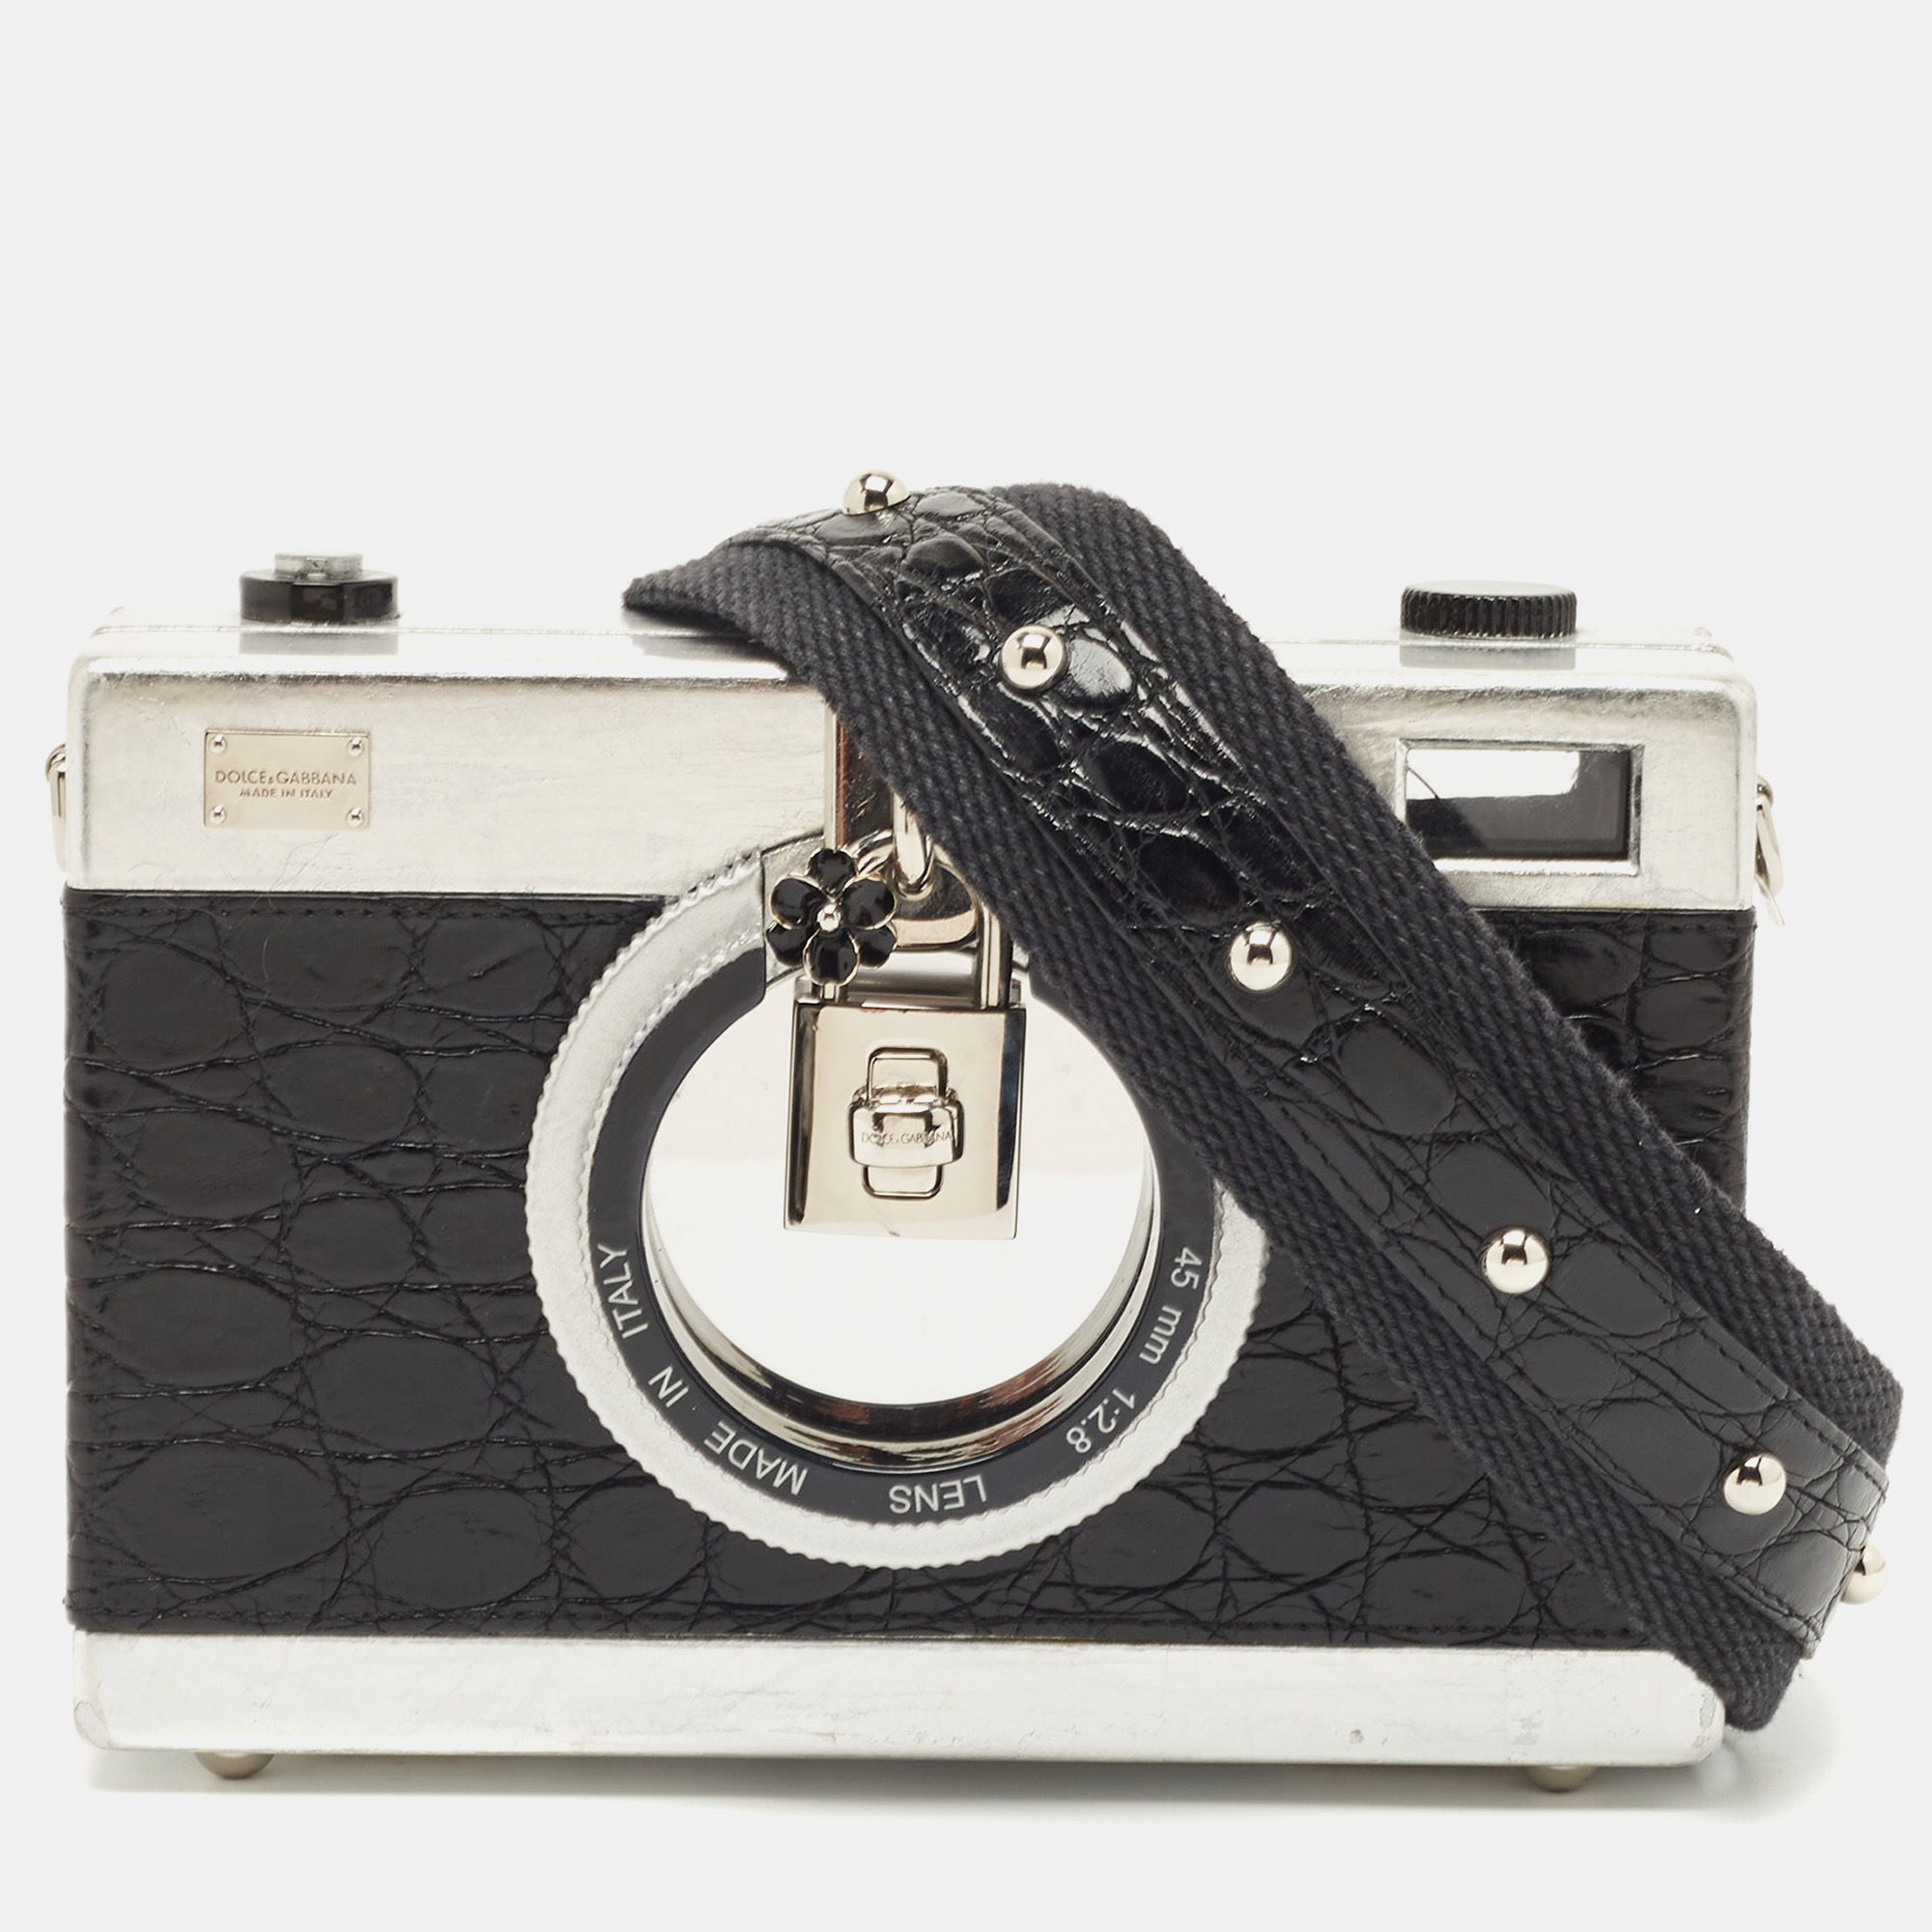 

Dolce & Gabbana Black/Silver Croc Embossed and Leather Camera Case Shoulder Bag